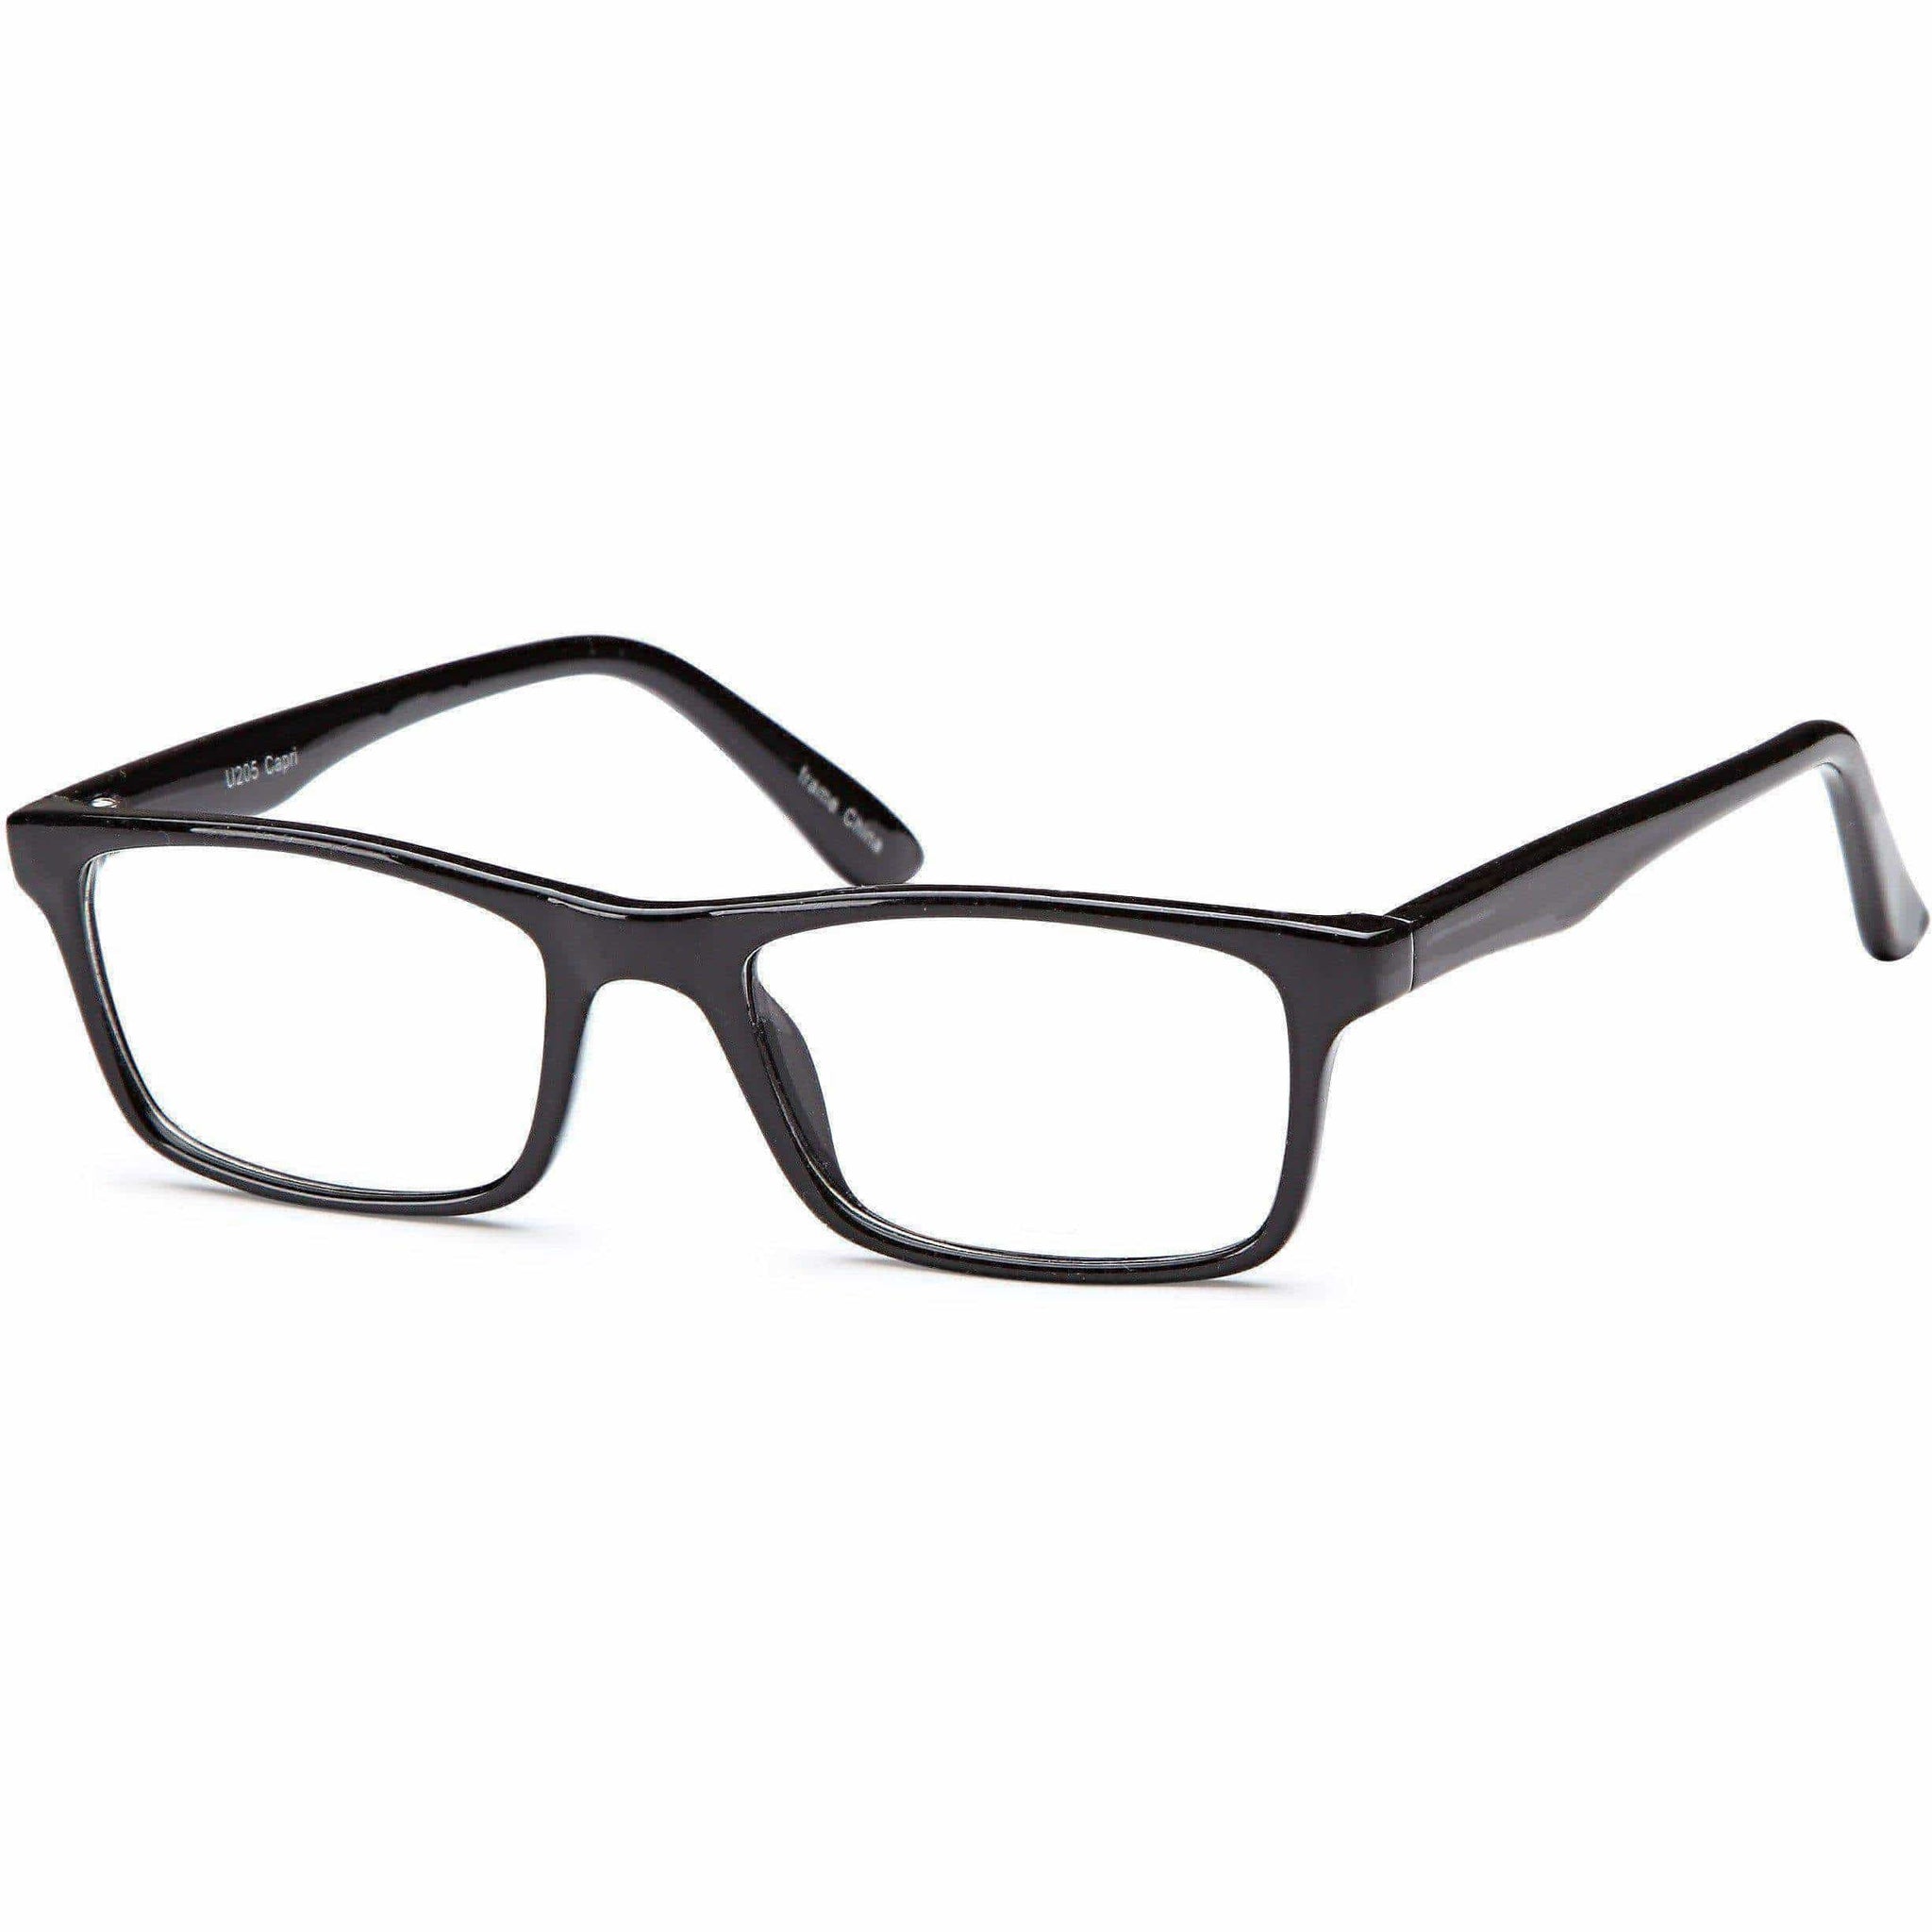 2U 205 - Express glasses